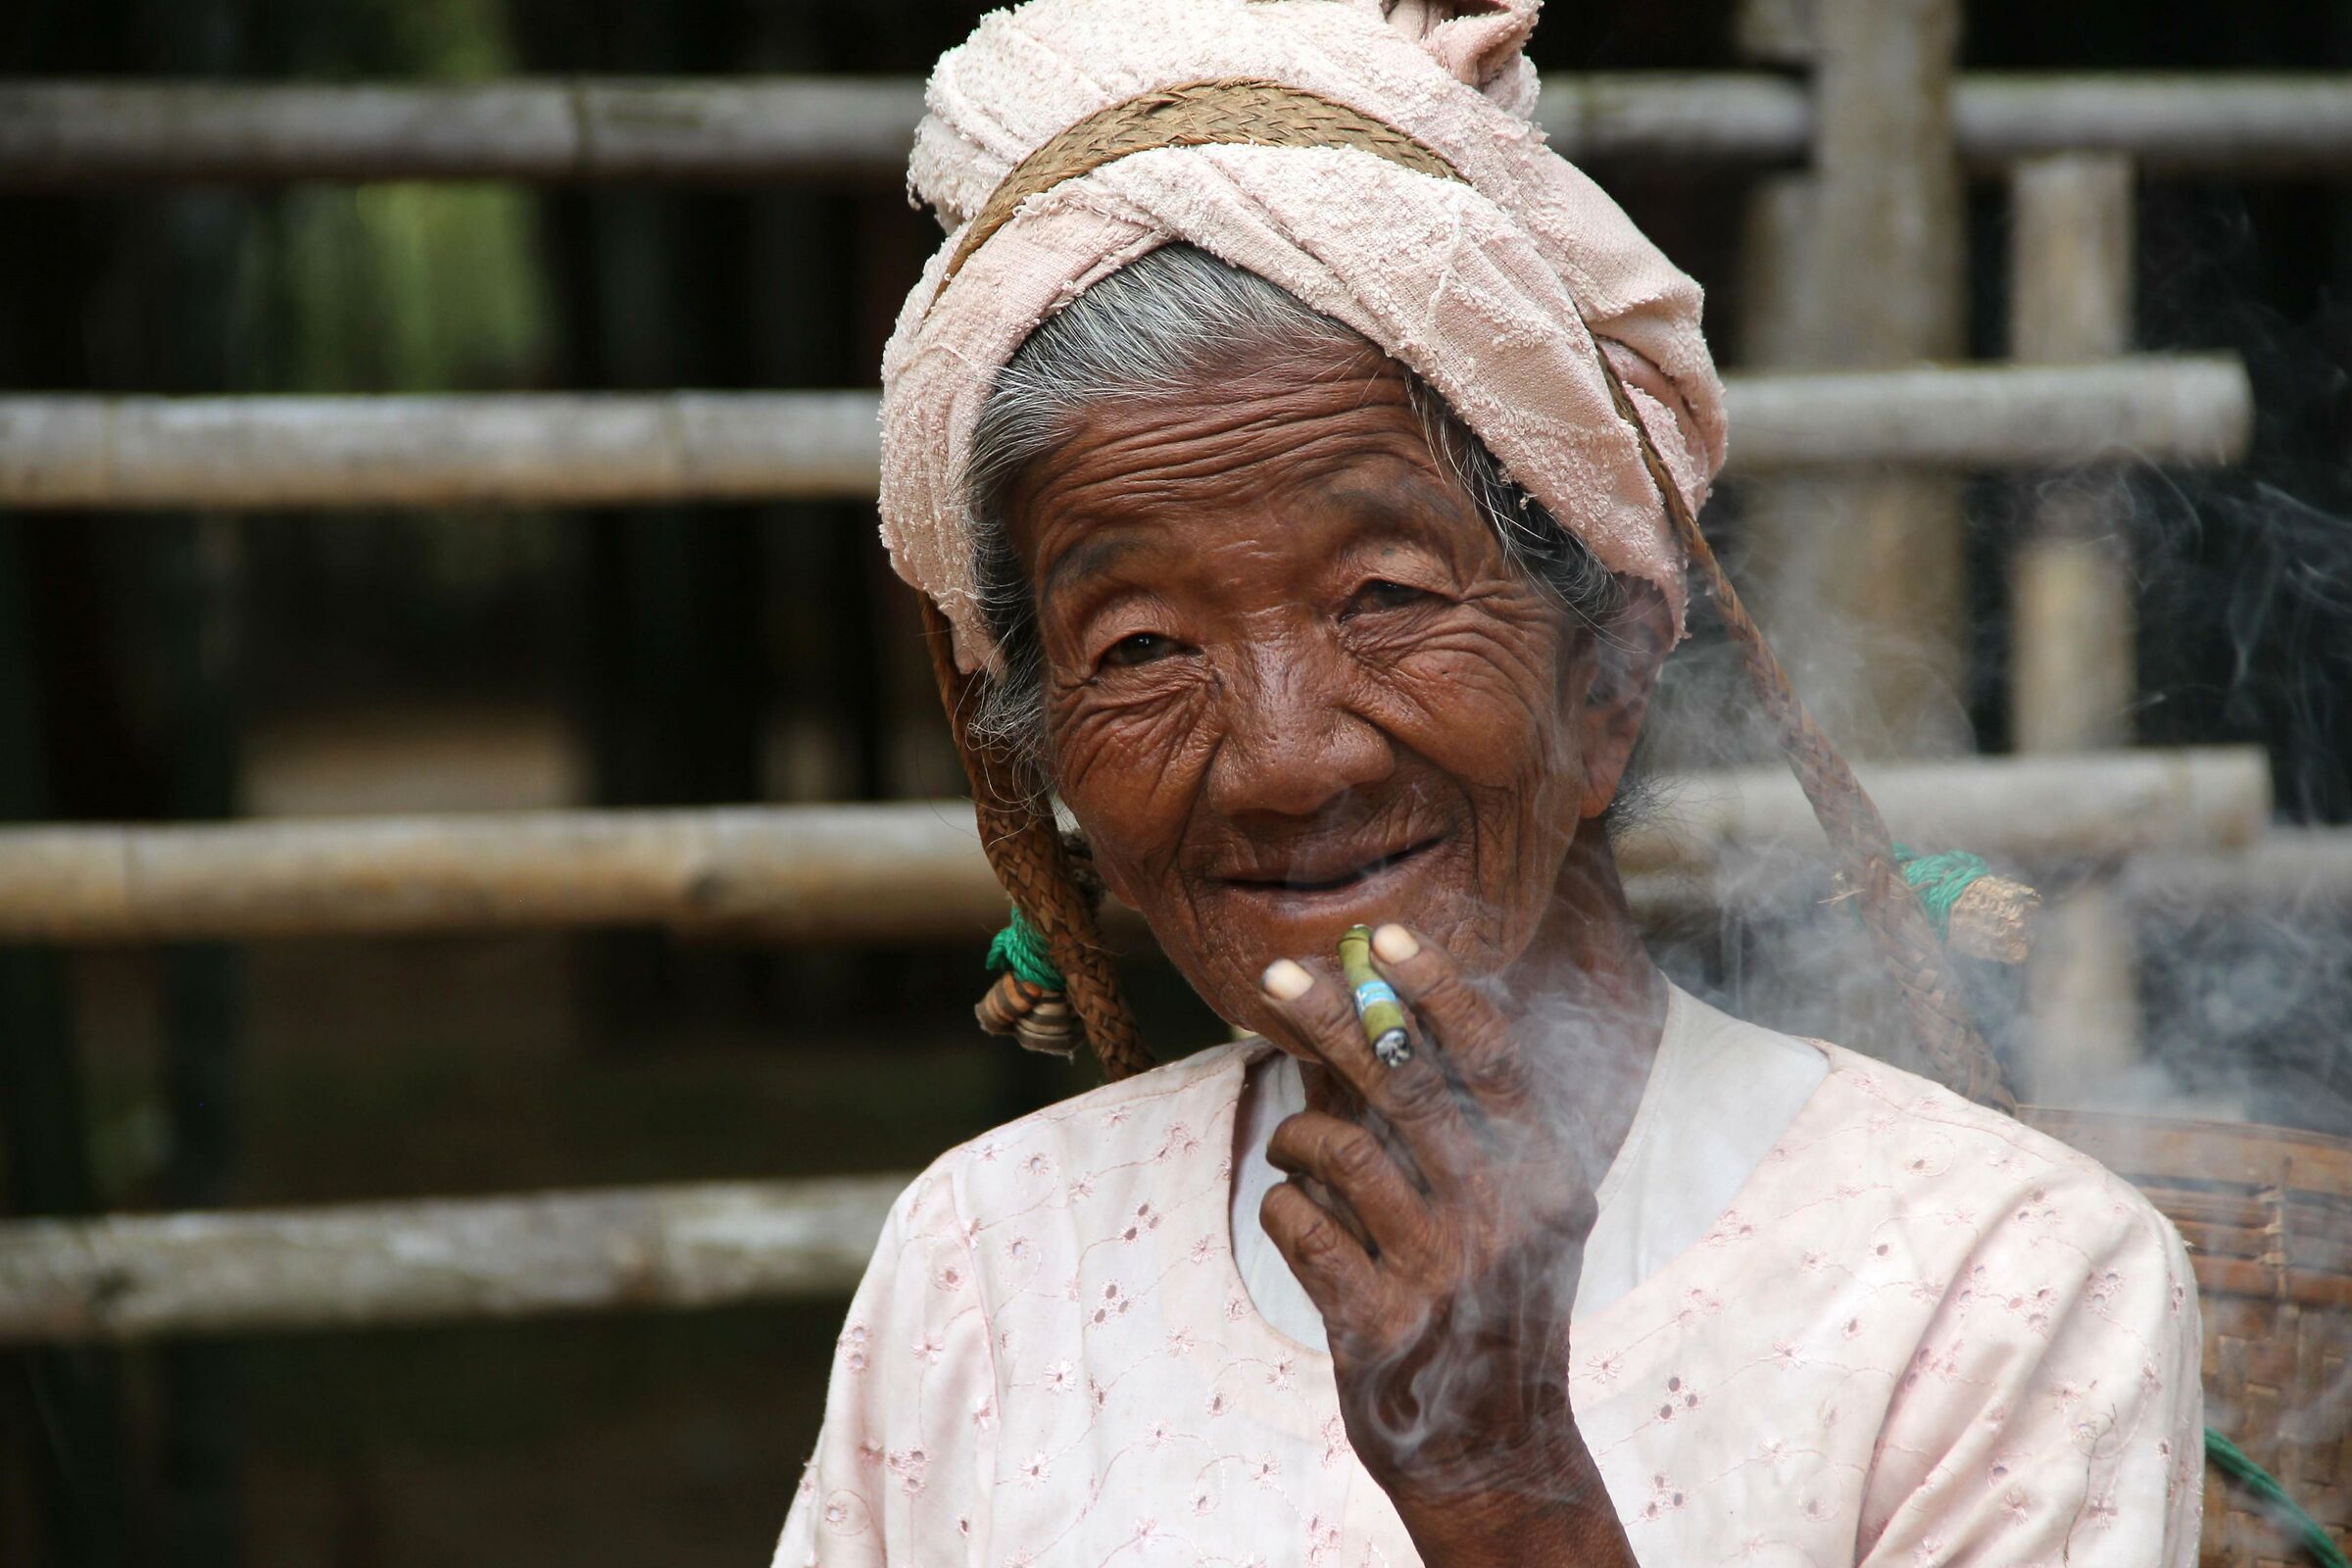 Myanmar: Does smoking hurt?...